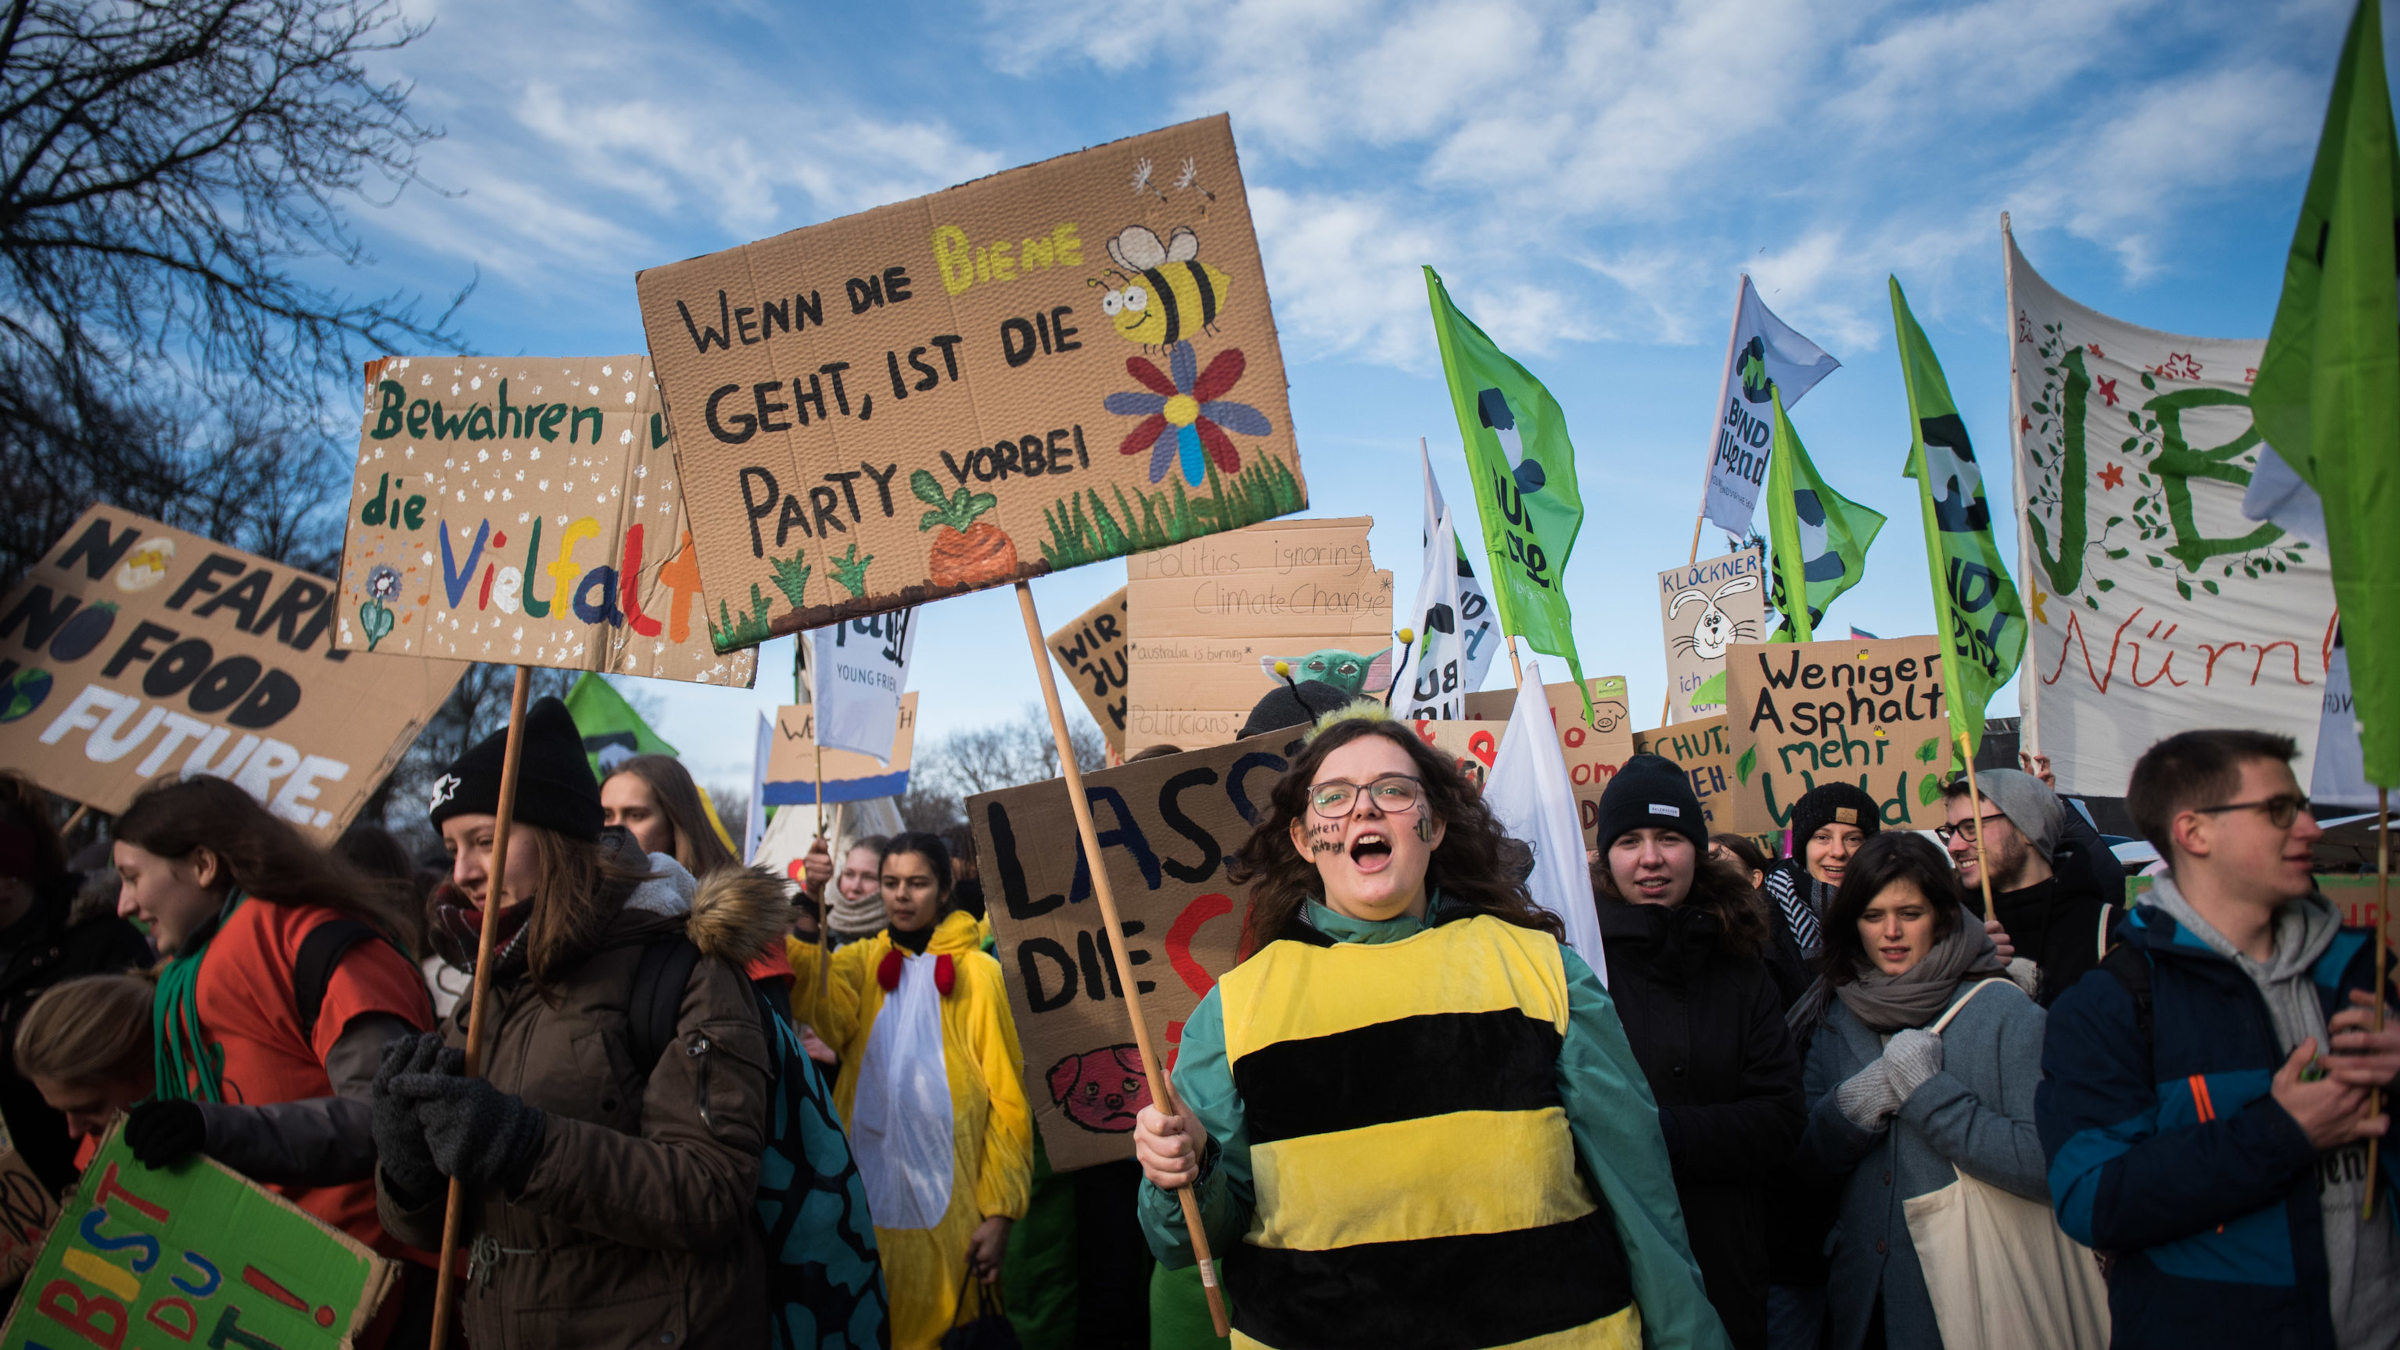 Eine Aufnahme von der „Wir haben es satt“-Demo 2020. Zu sehen sind viele Demonstrierende mit bunten Plakaten. Im Vordergrund ist eine Person im Bienenkostüm – sie hält ein Schild in der Hand: Wenn die Biene geht, ist die Party vorbei!